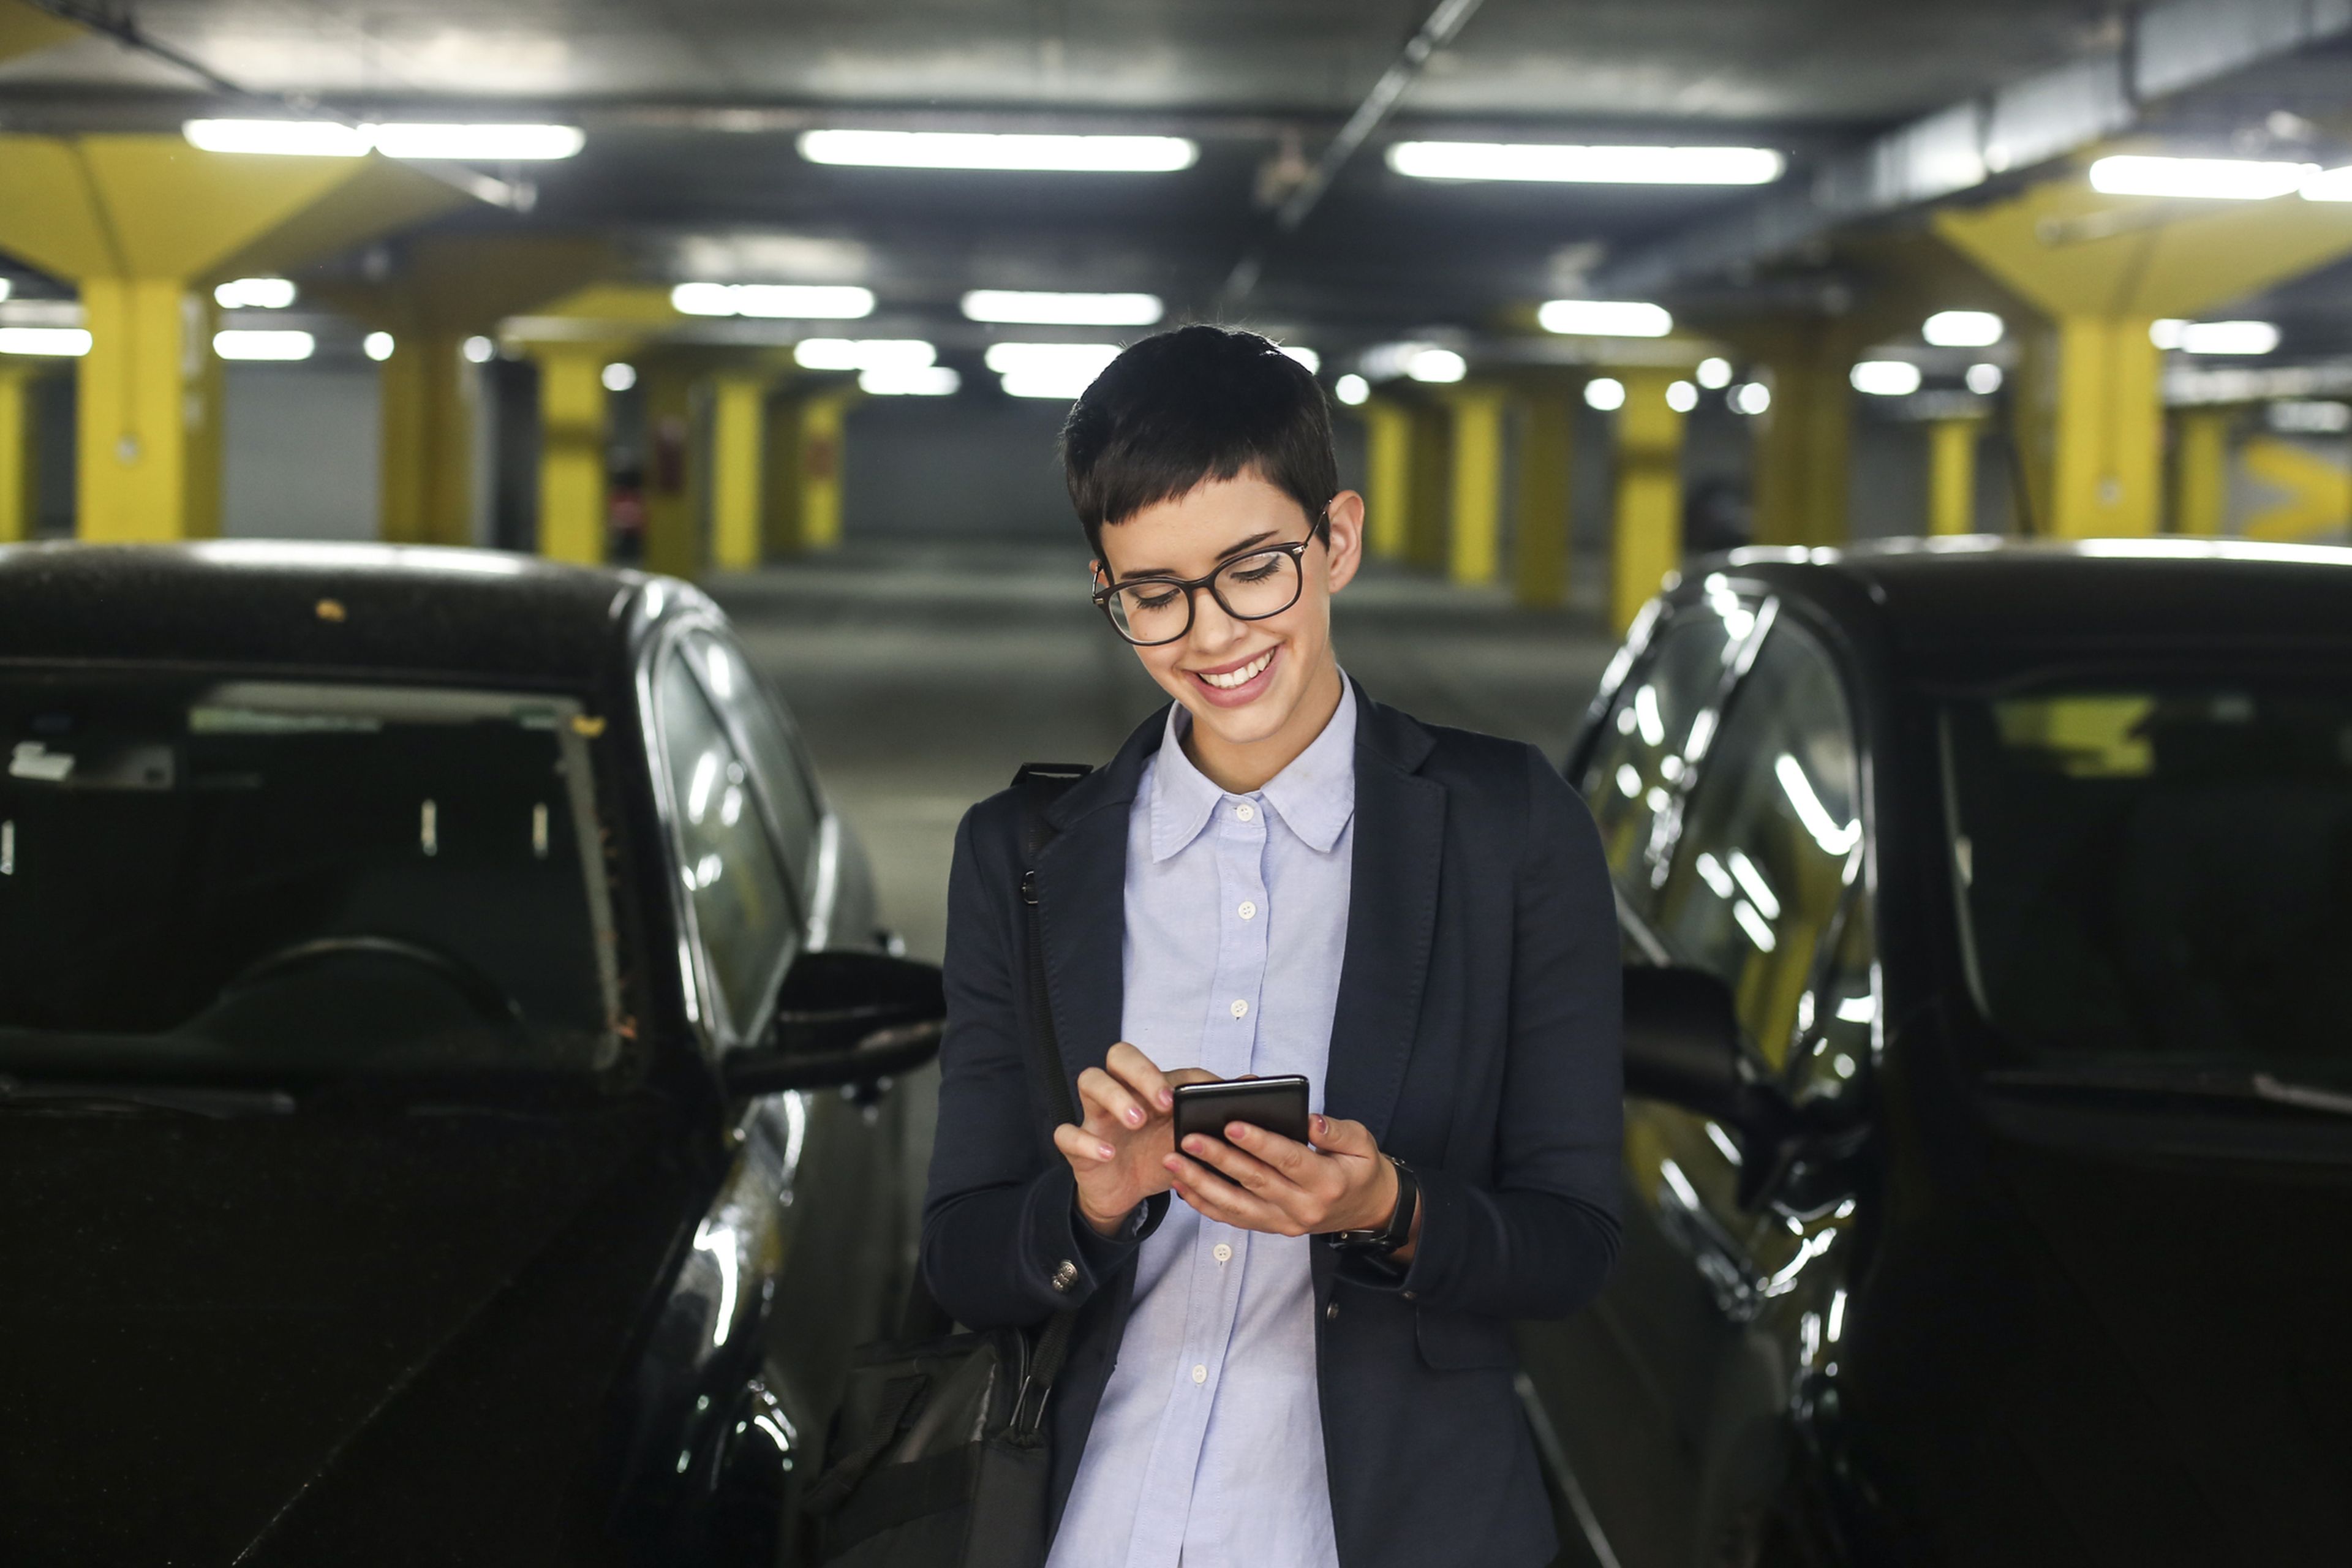 LetMePark facilita el aparcamiento, con búsquedas por voz y reservas en parkings de acceso automático.